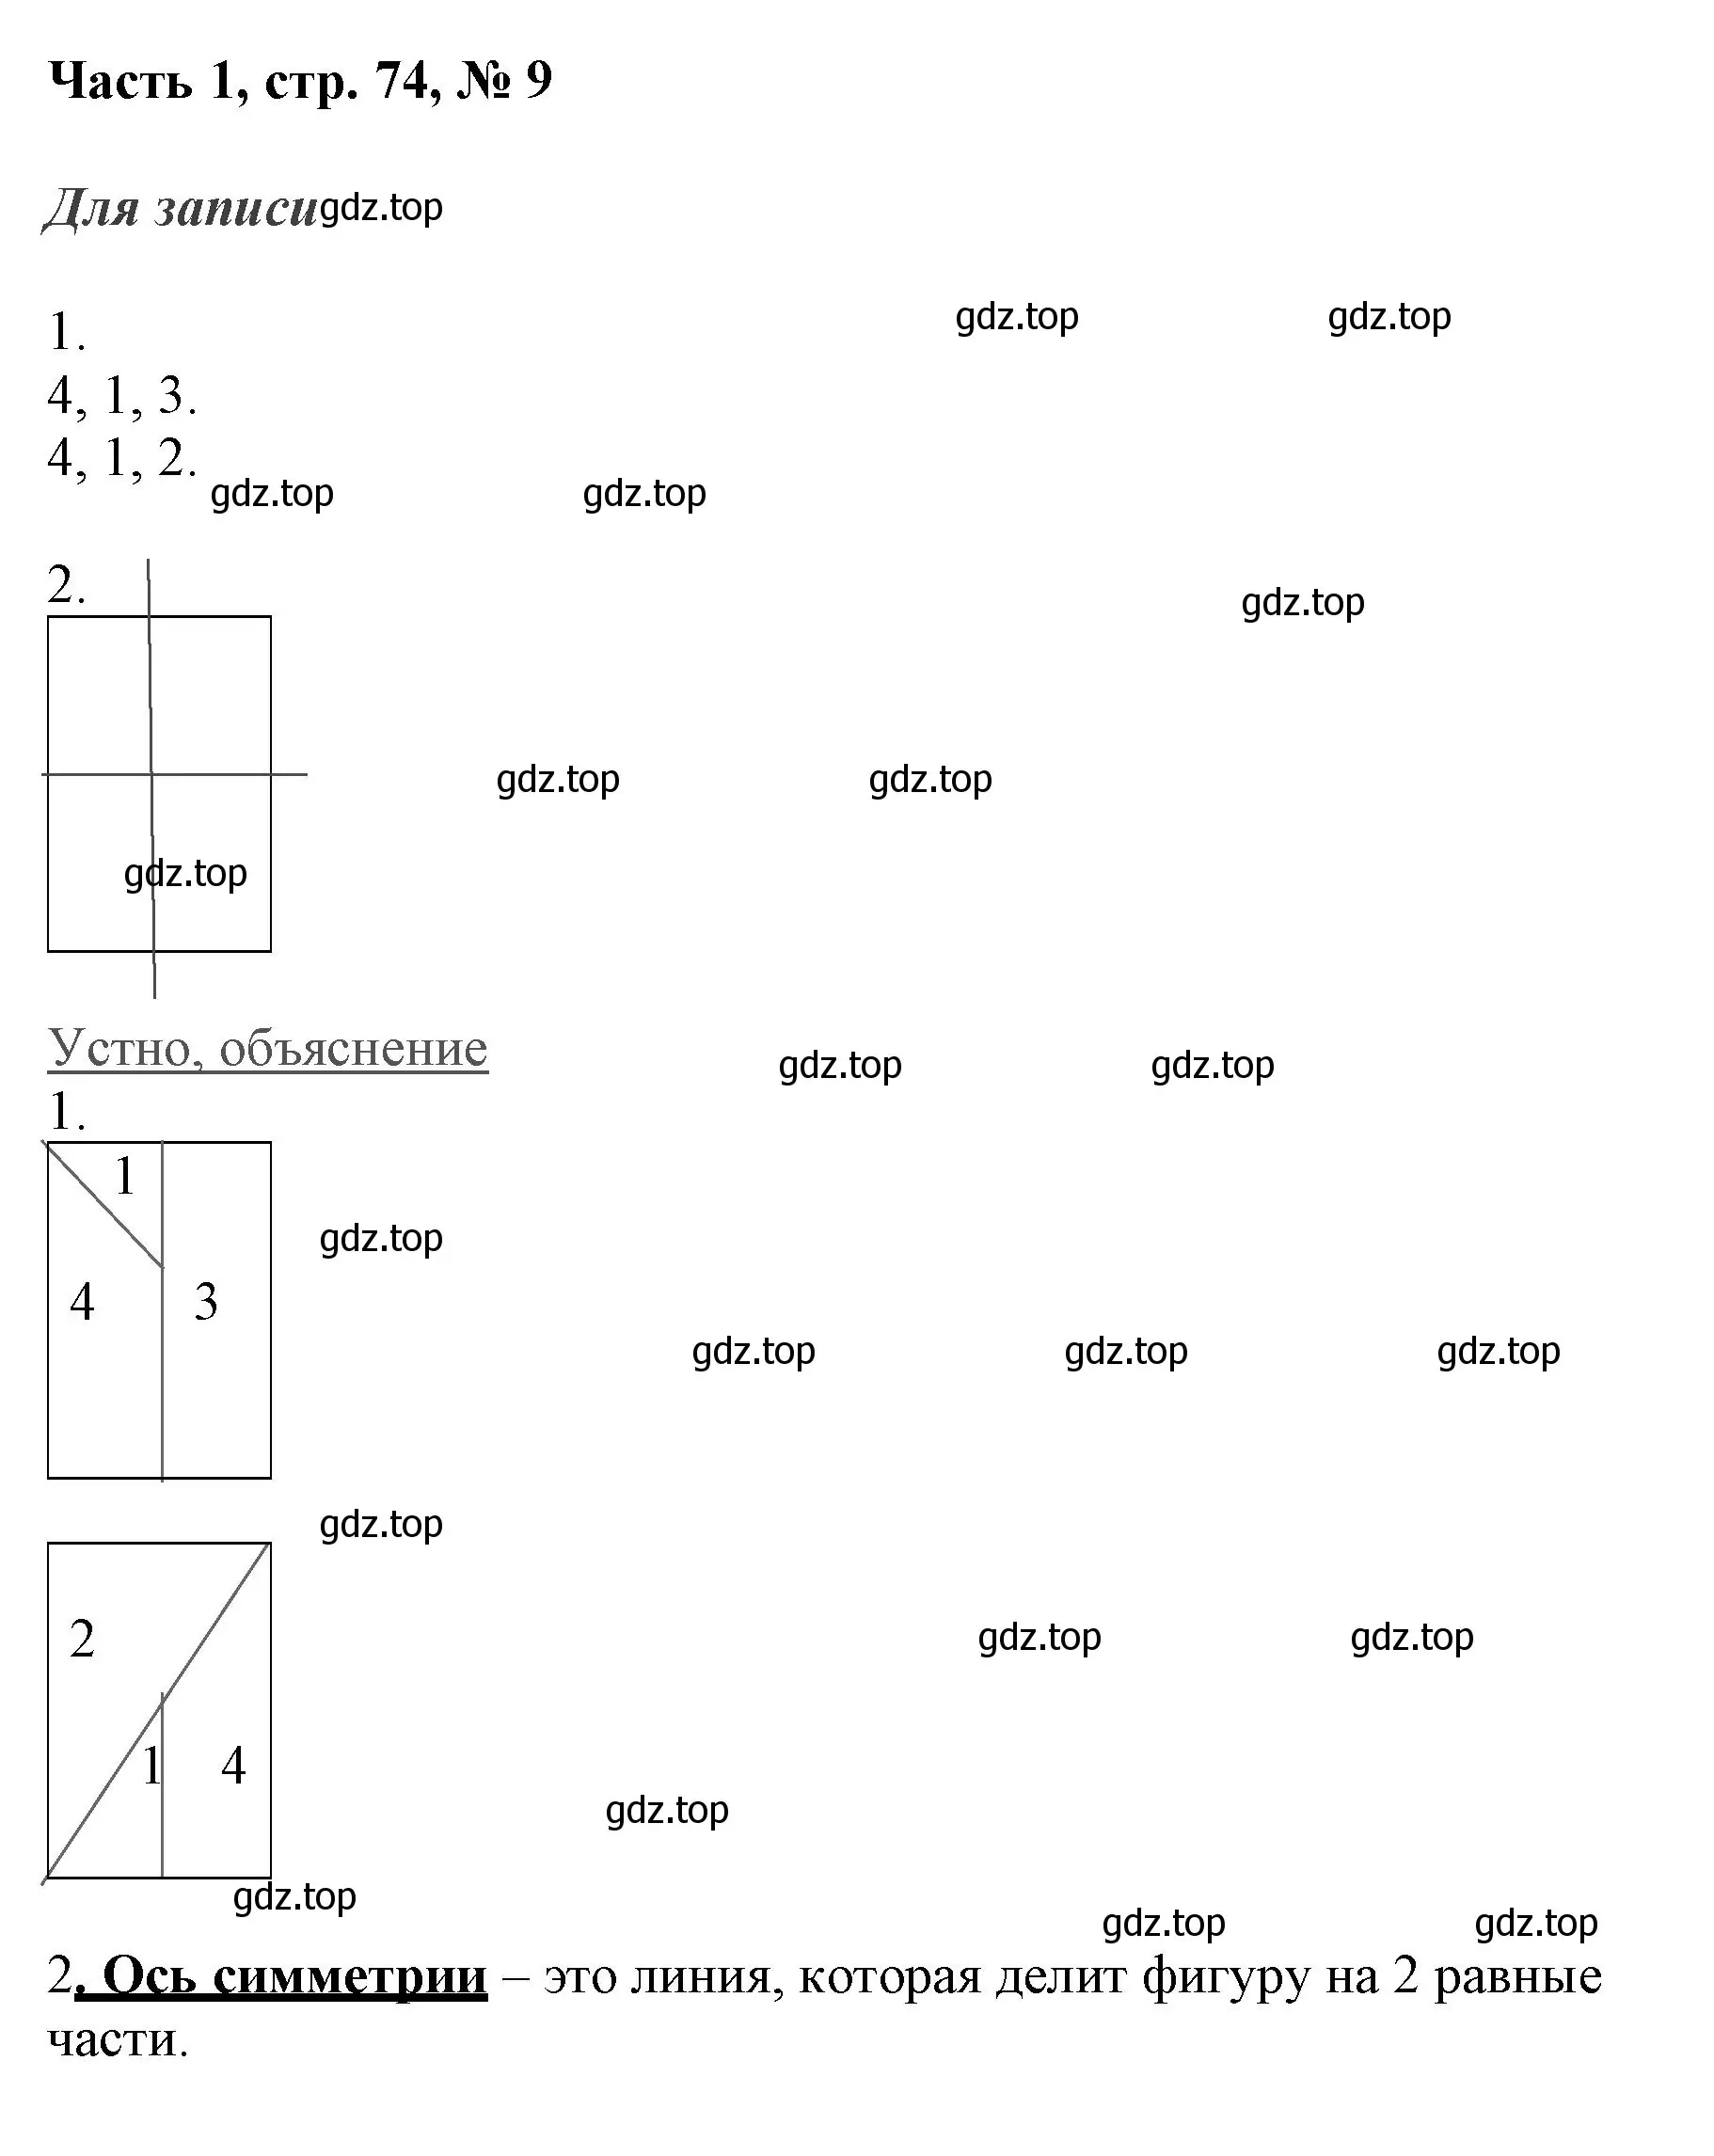 Решение номер 9 (страница 74) гдз по математике 3 класс Моро, Бантова, учебник 1 часть